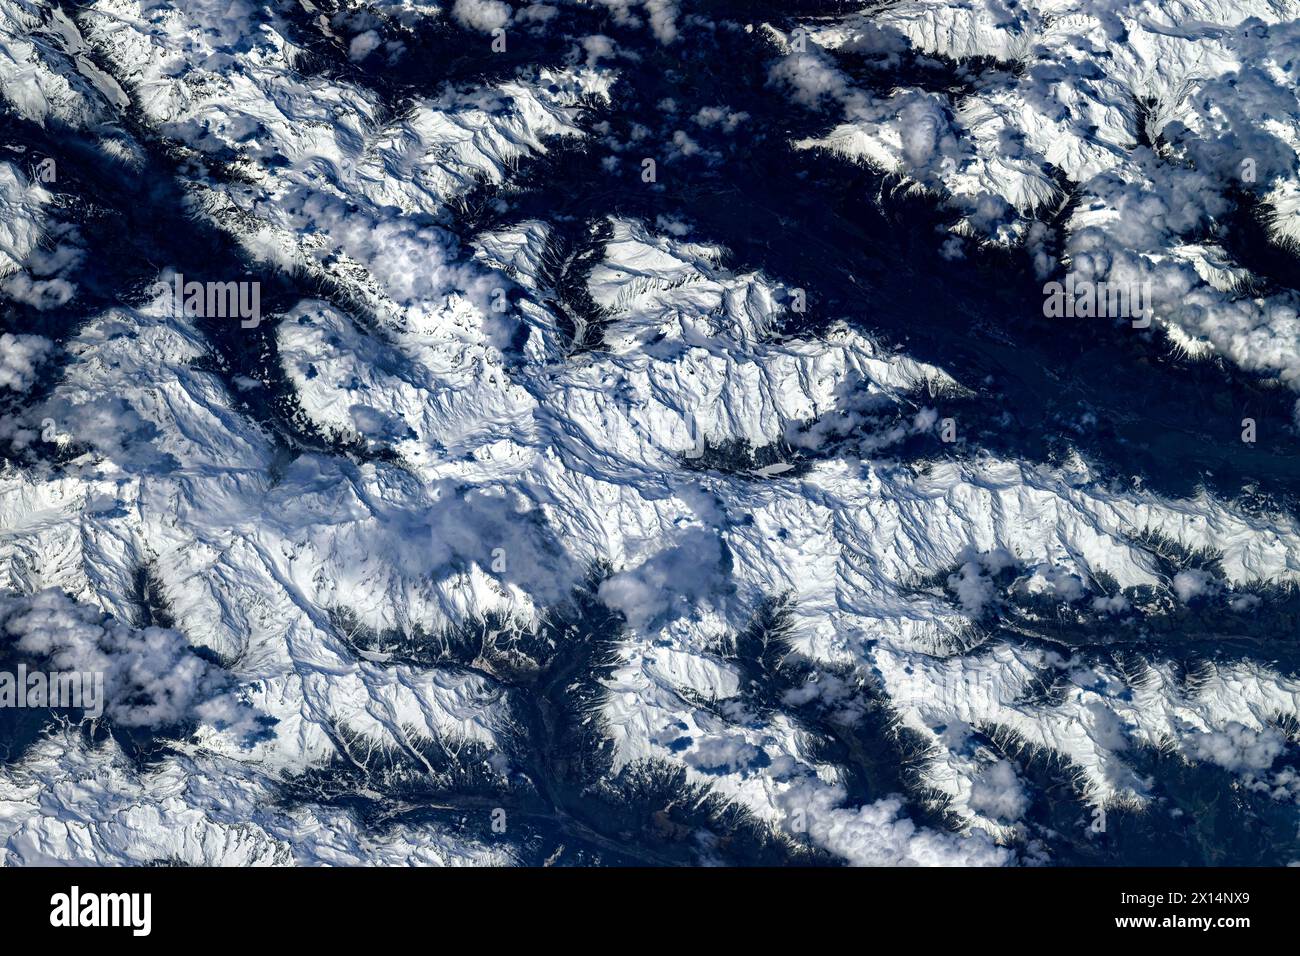 Chaîne de montagnes enneigée en Italie ou en Croatie. Amélioration numérique d'une image par la NASA Banque D'Images